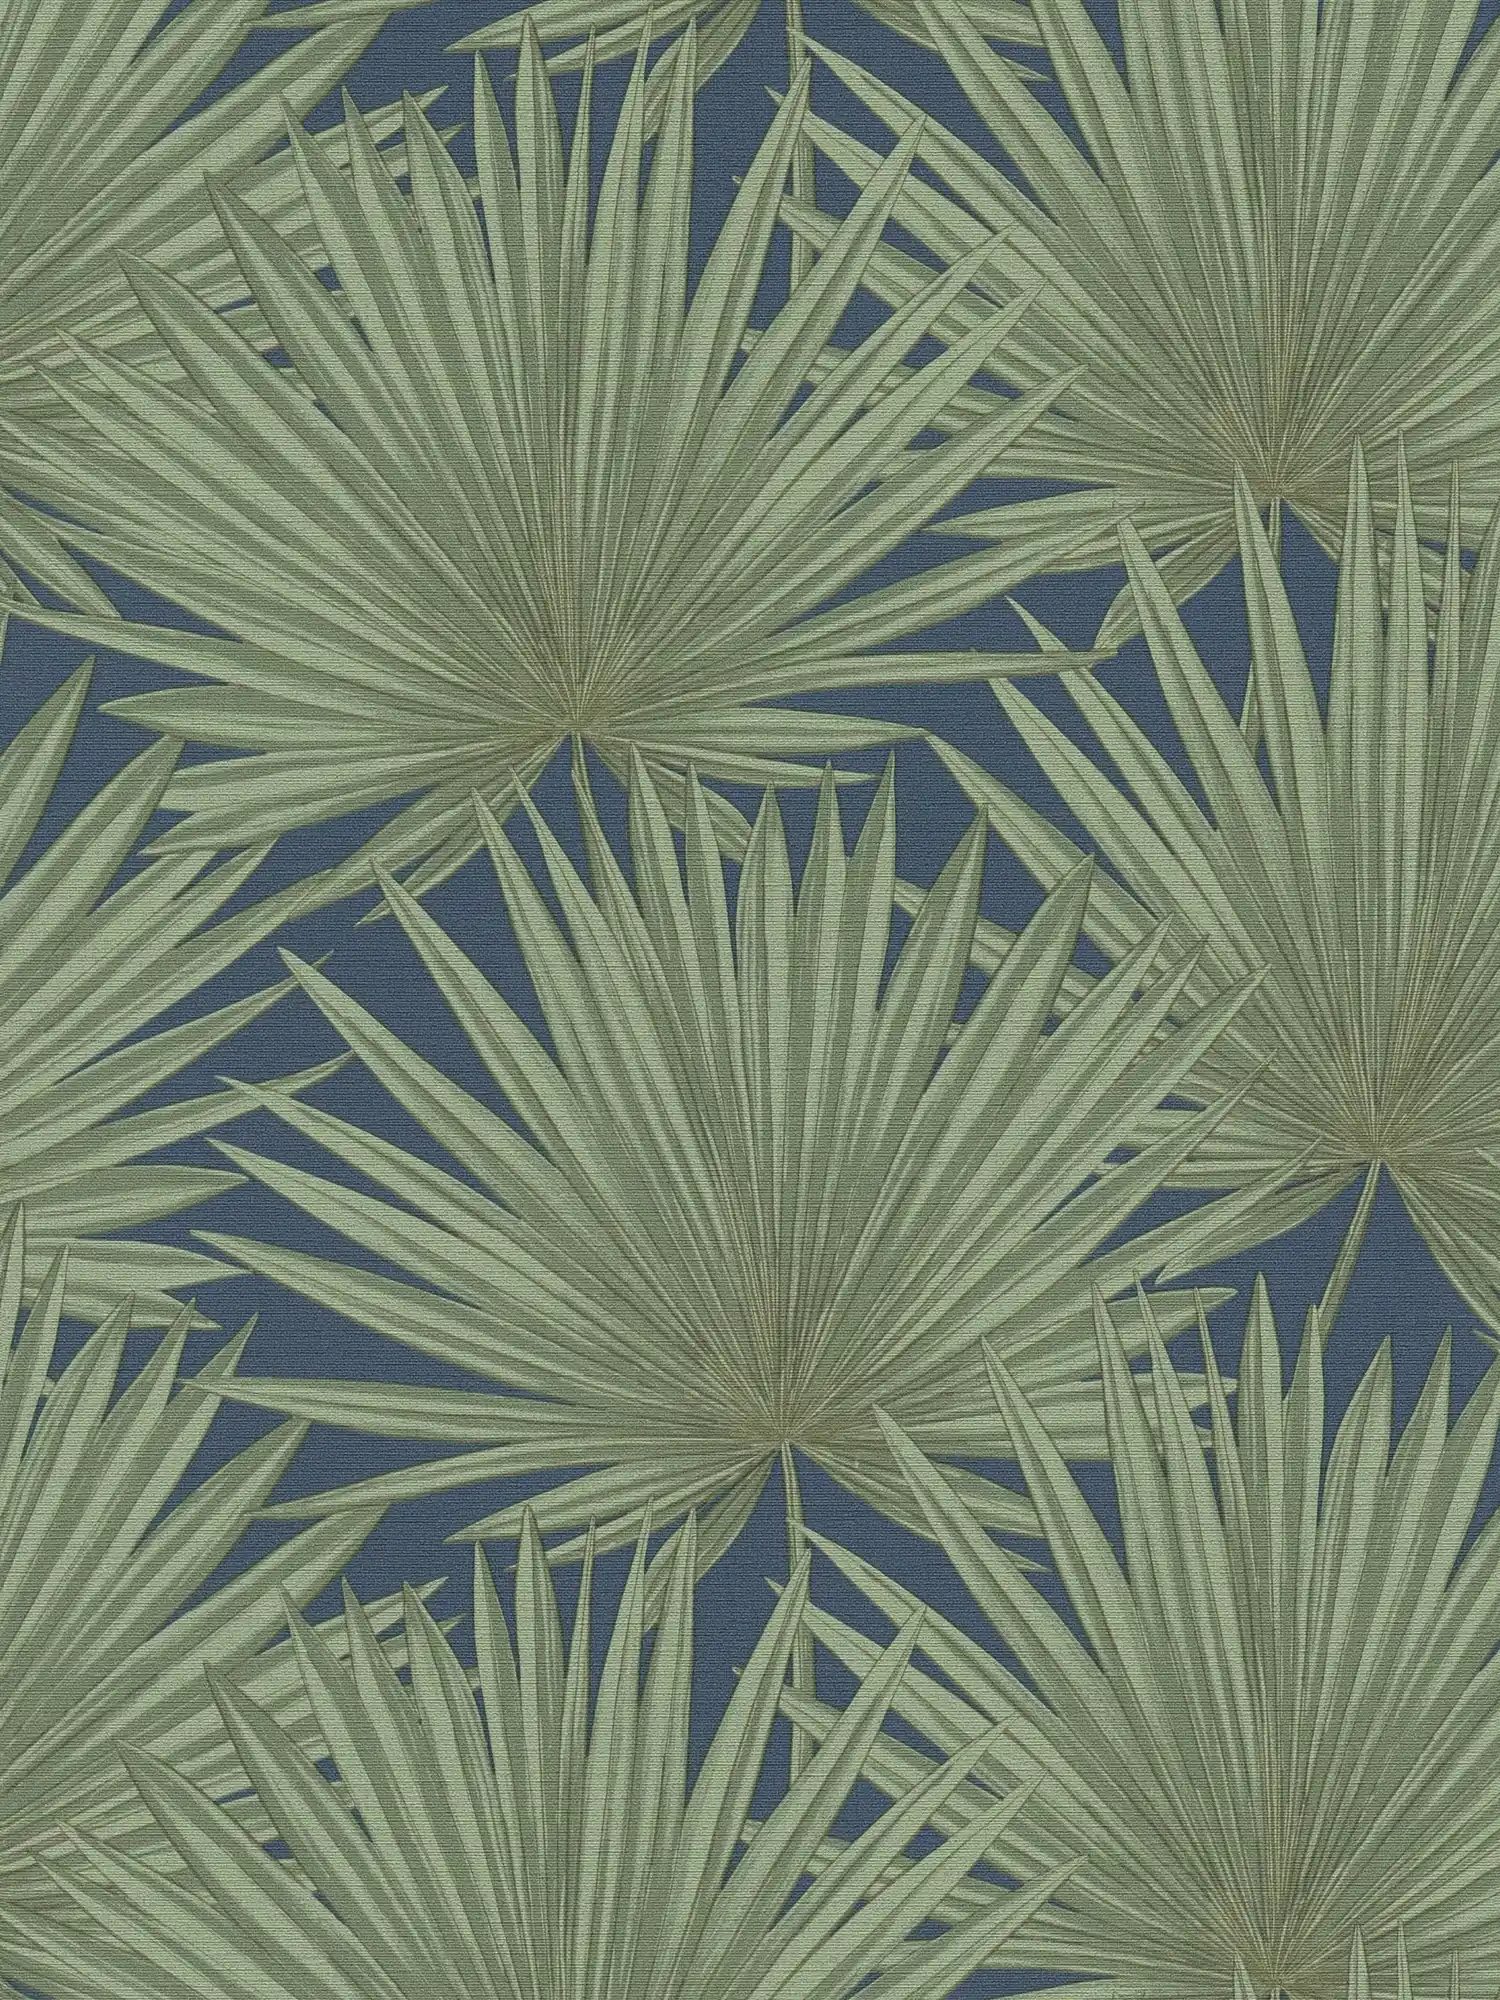 Vliesbehang met palmbladeren op een subtiele achtergrond - groen, blauw
